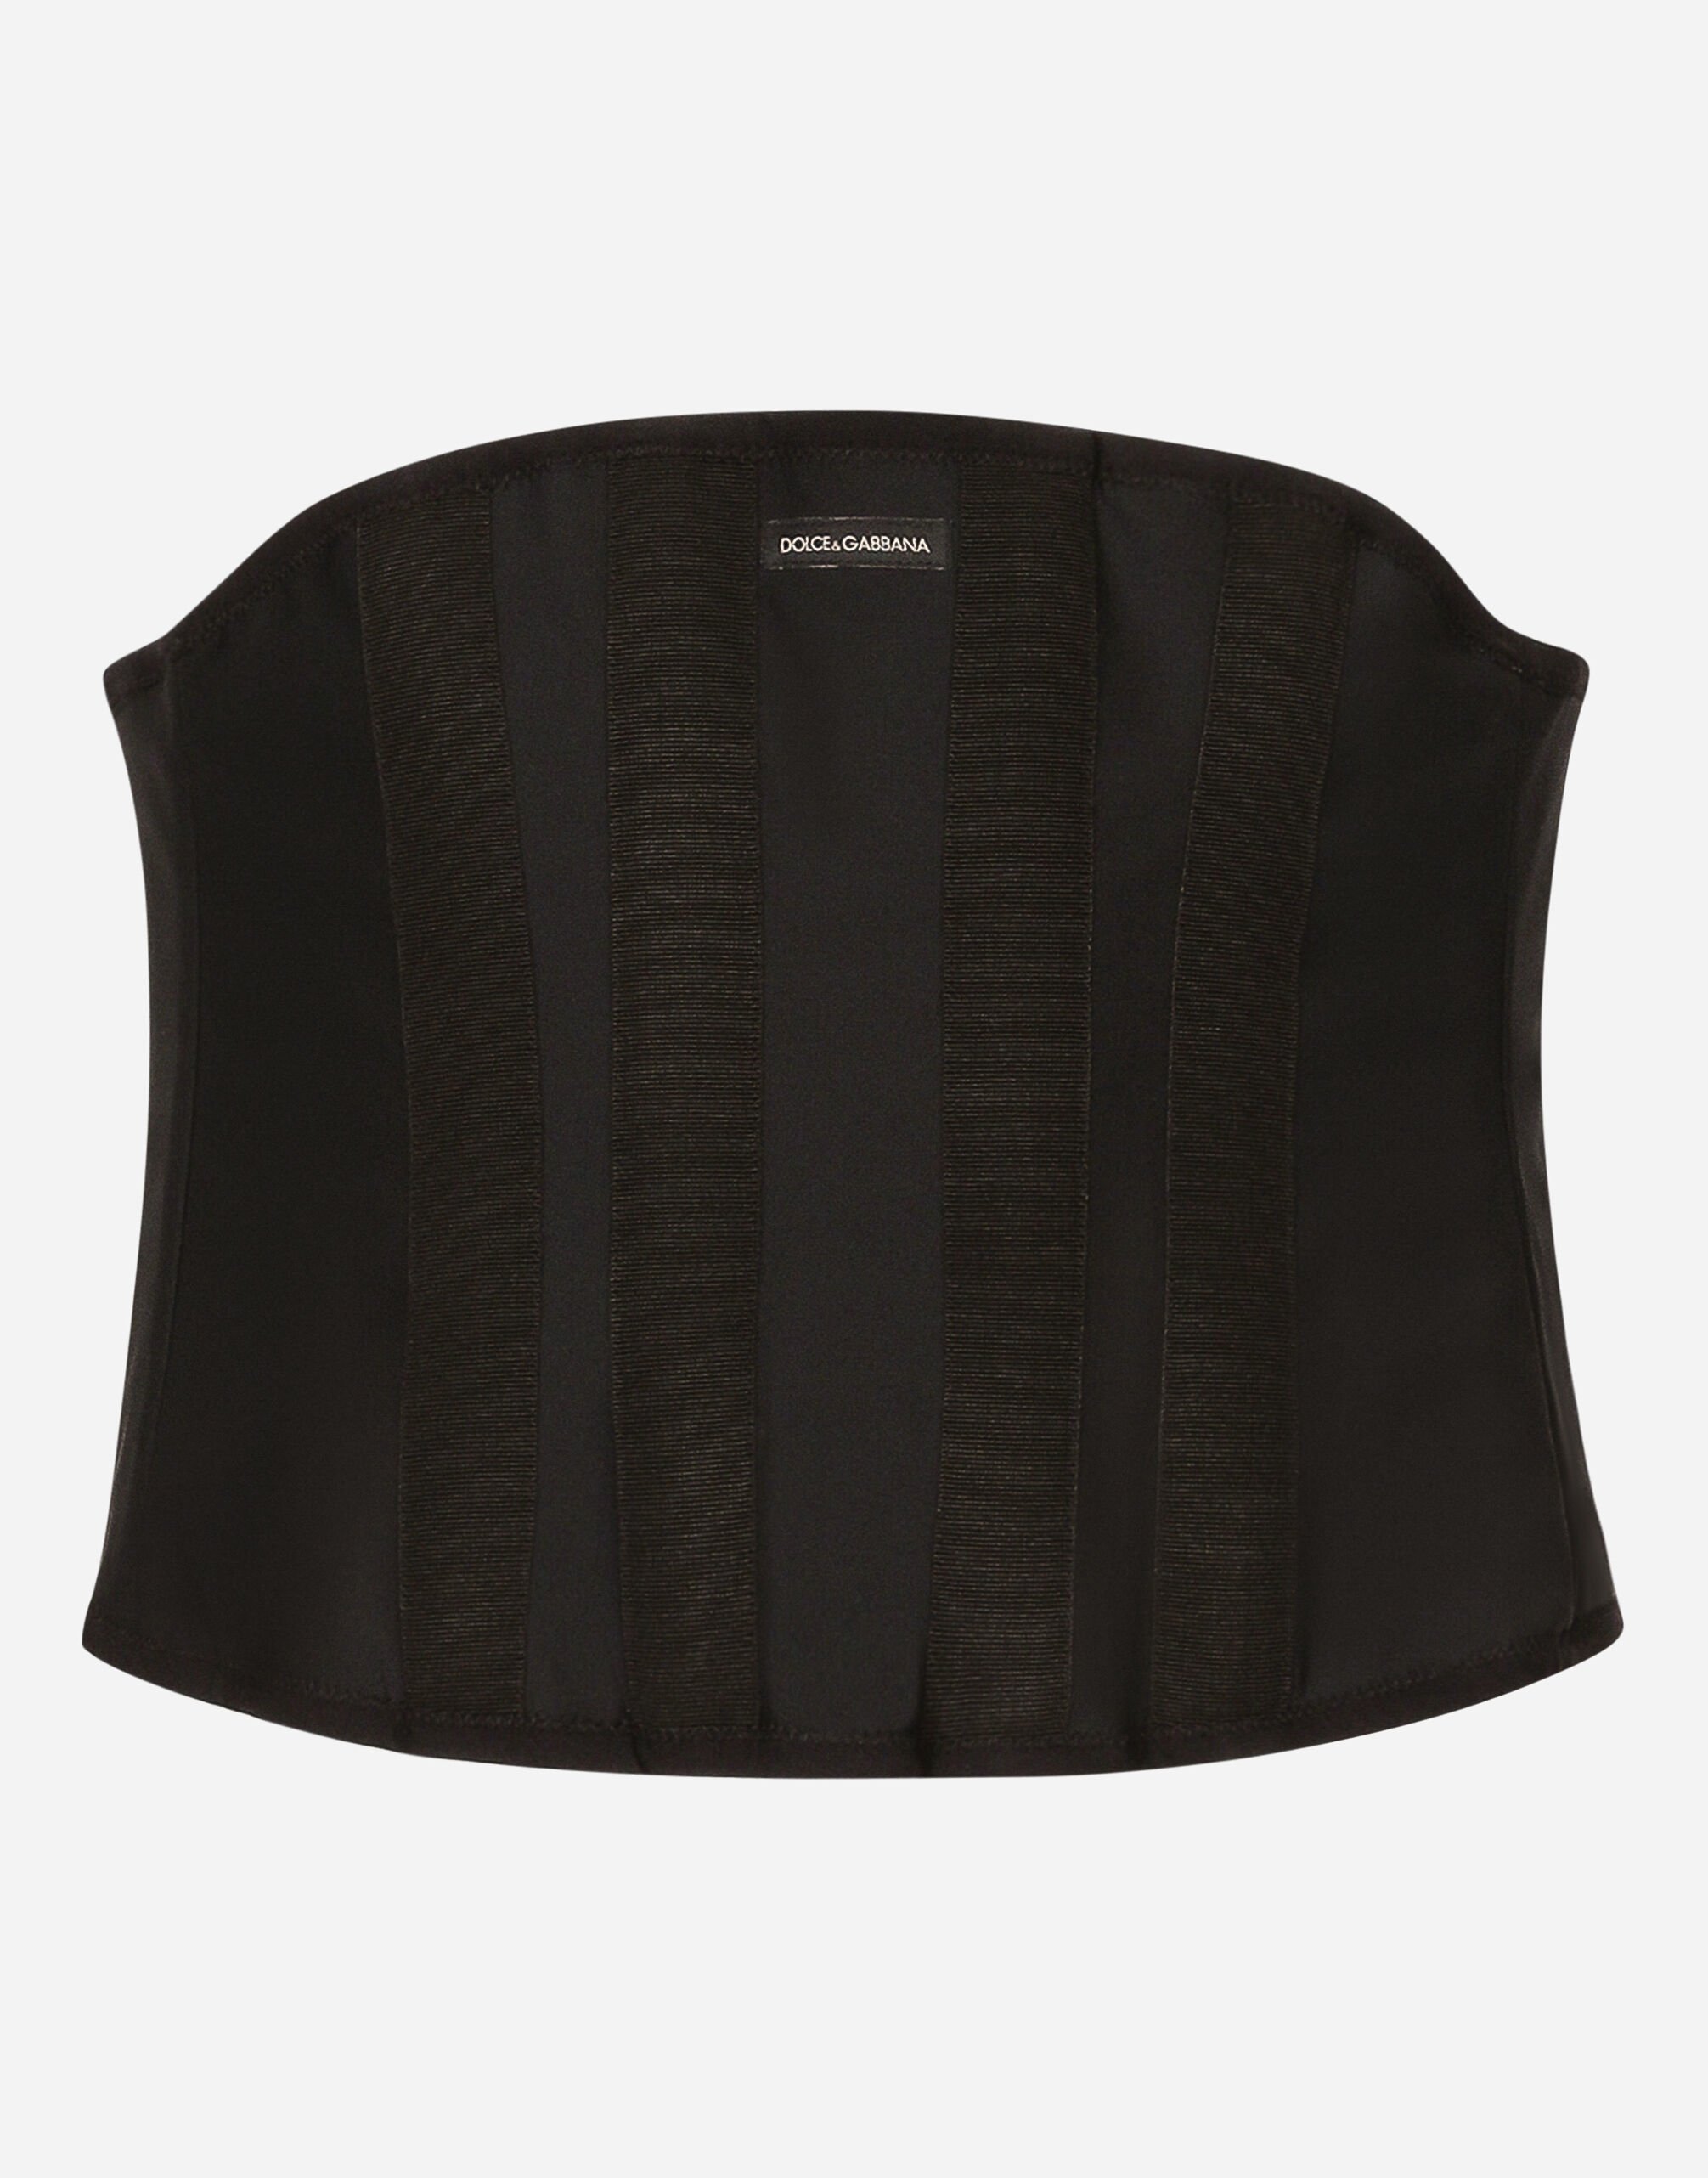 Dolce & Gabbana Boned stretch corset Black A10792A1203